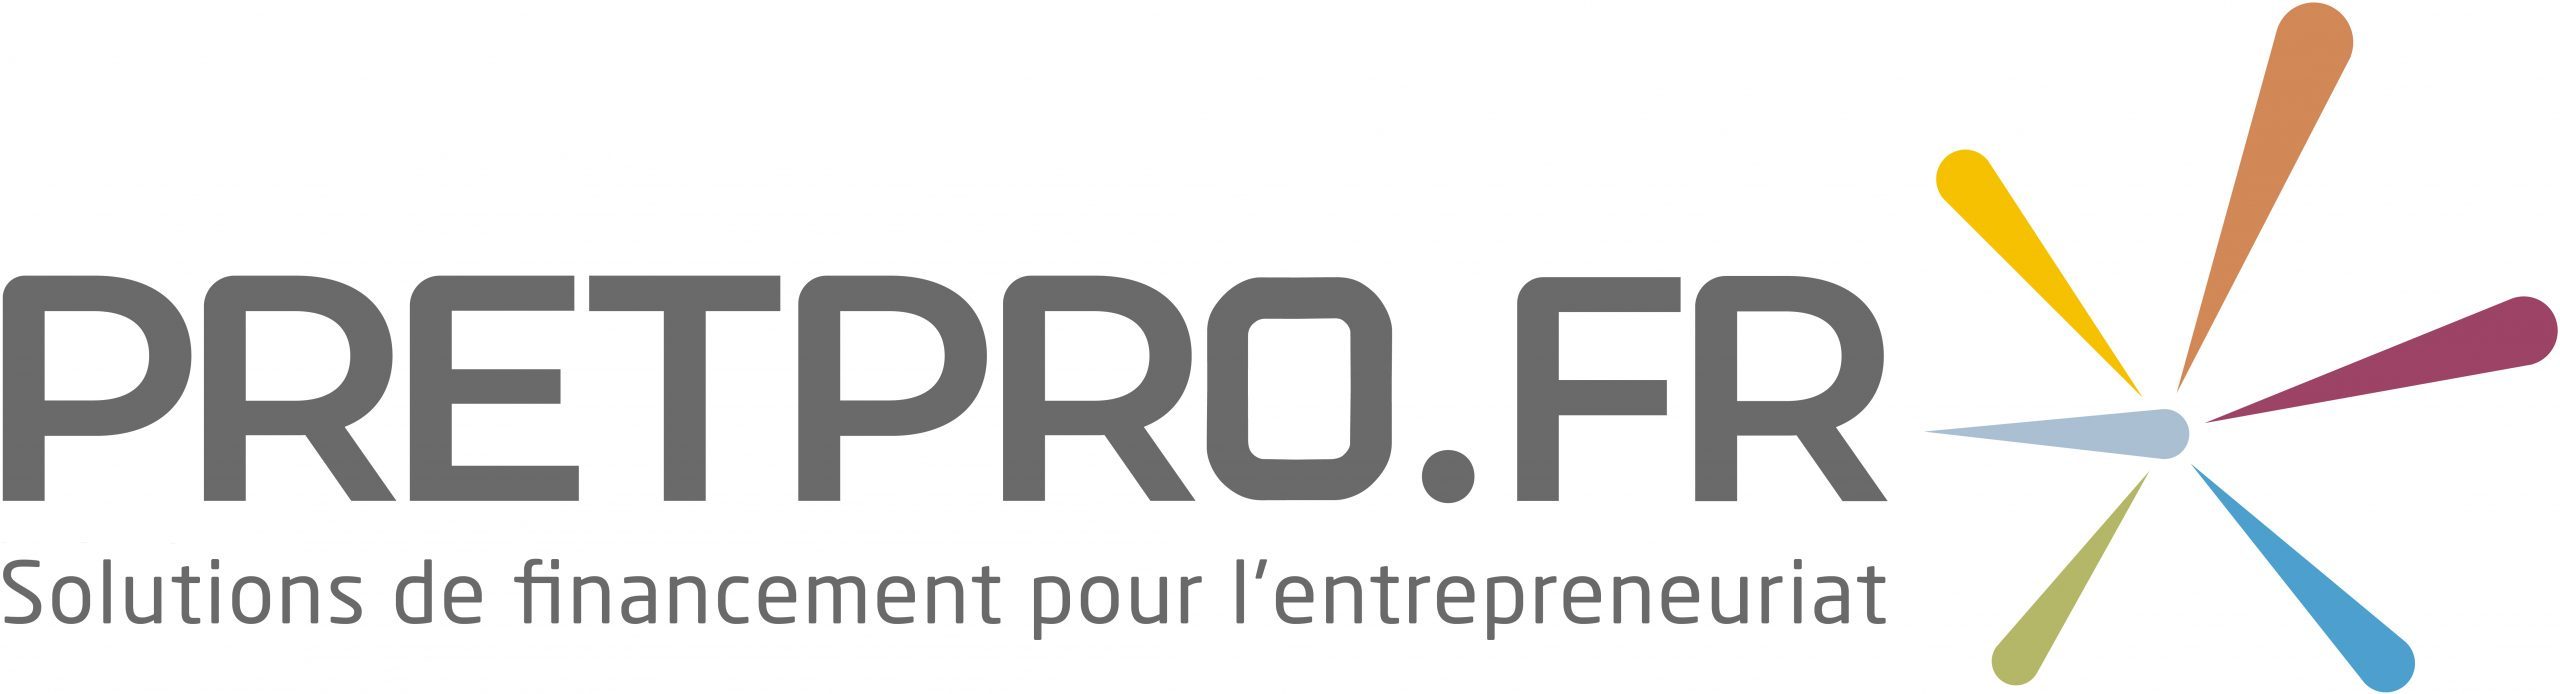 Pretpro.fr –  le-de-France